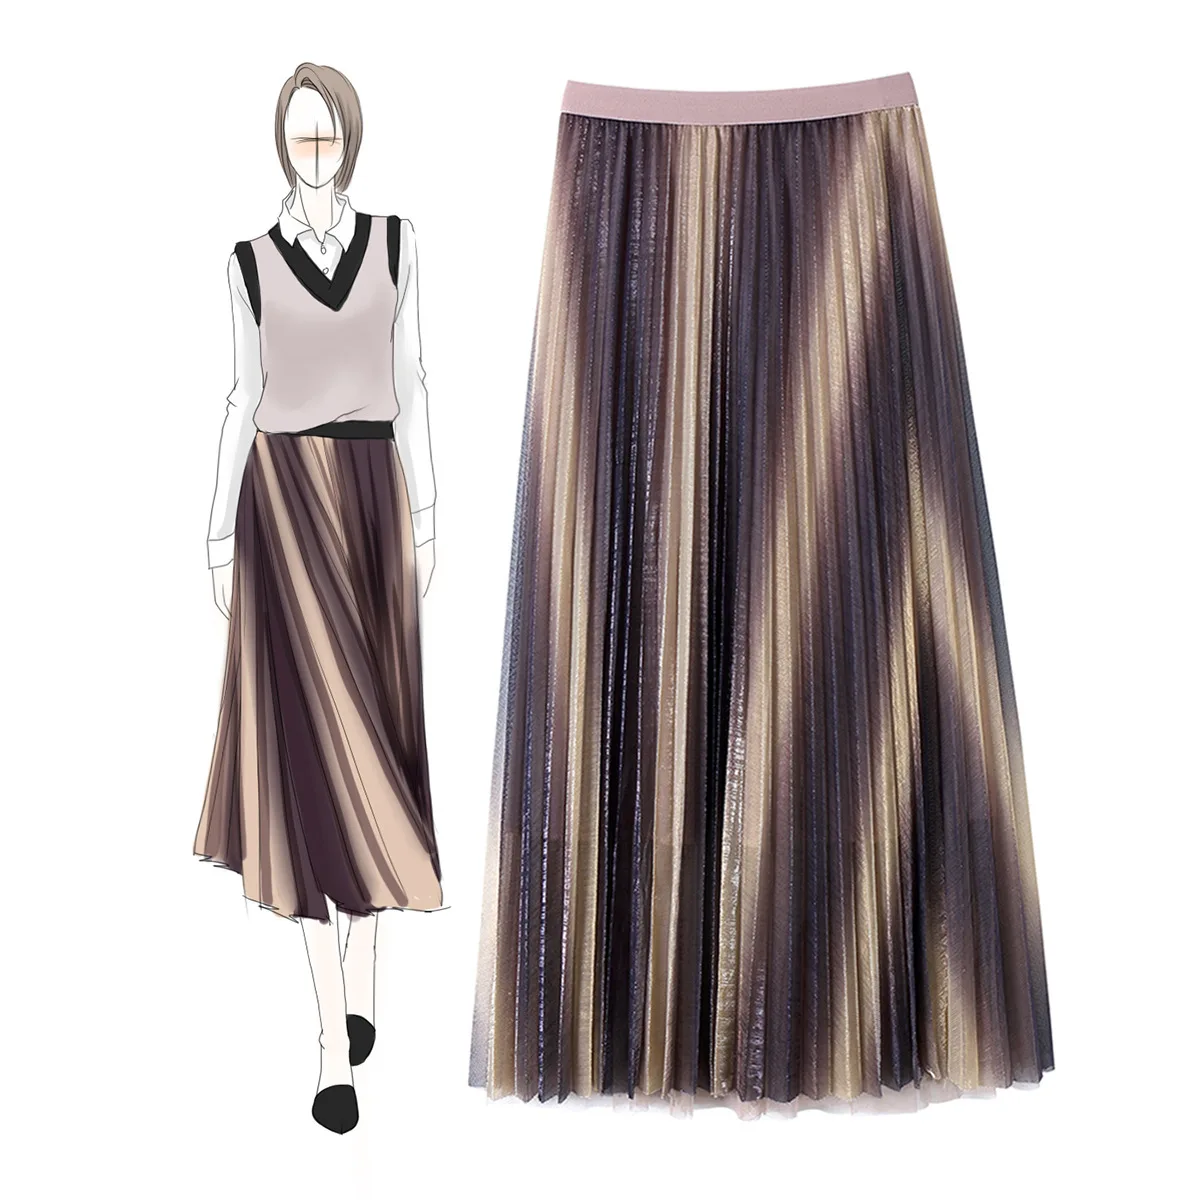 

Женская плиссированная юбка, Элегантная универсальная юбка трапециевидной формы с цветными вставками и кружевом, весна-лето 2020